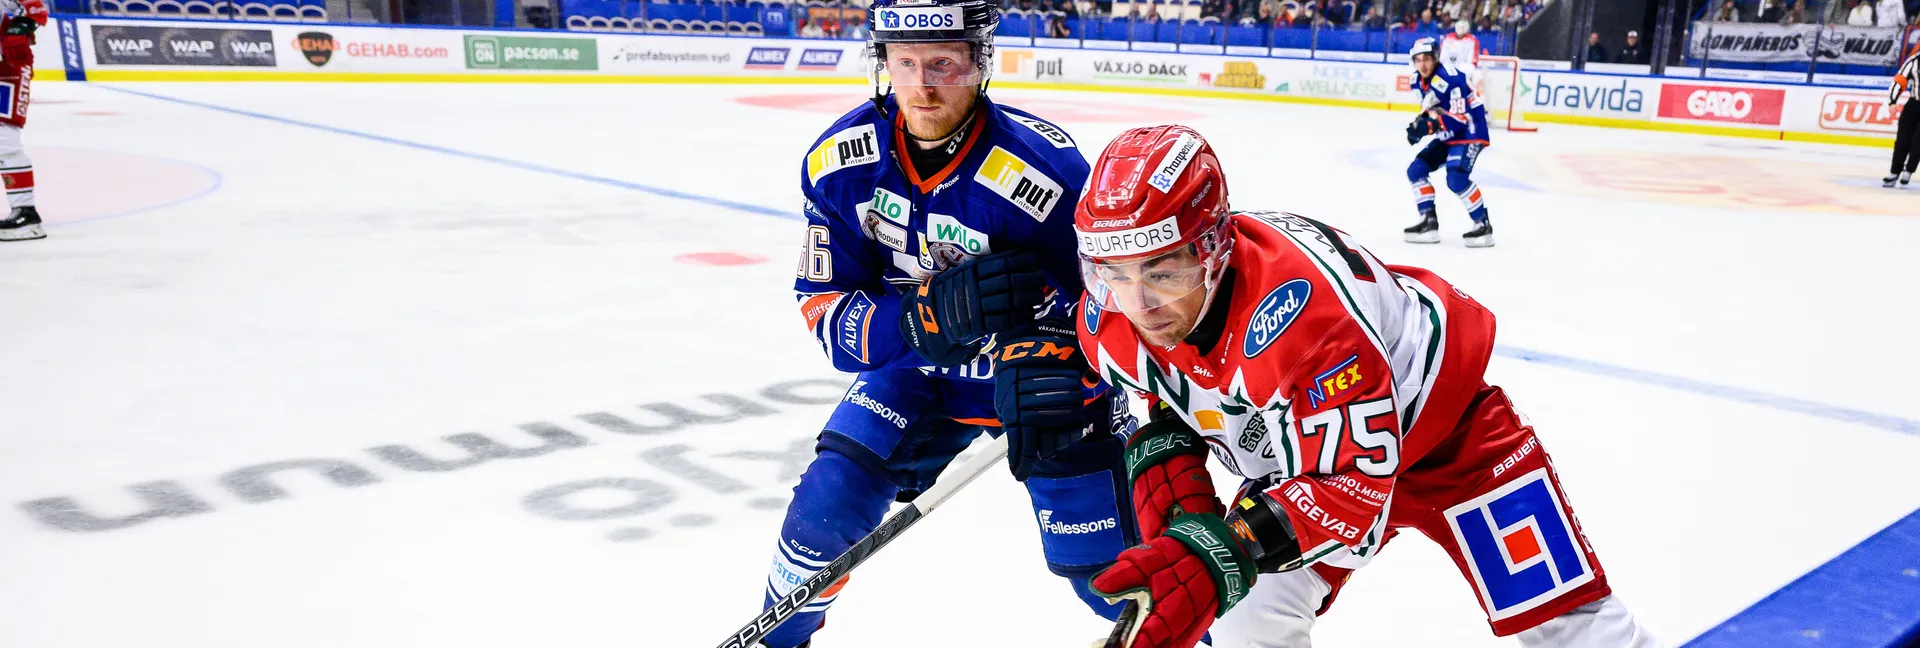 Ishockeymatch mellan Frölunda och Växjö i SHL